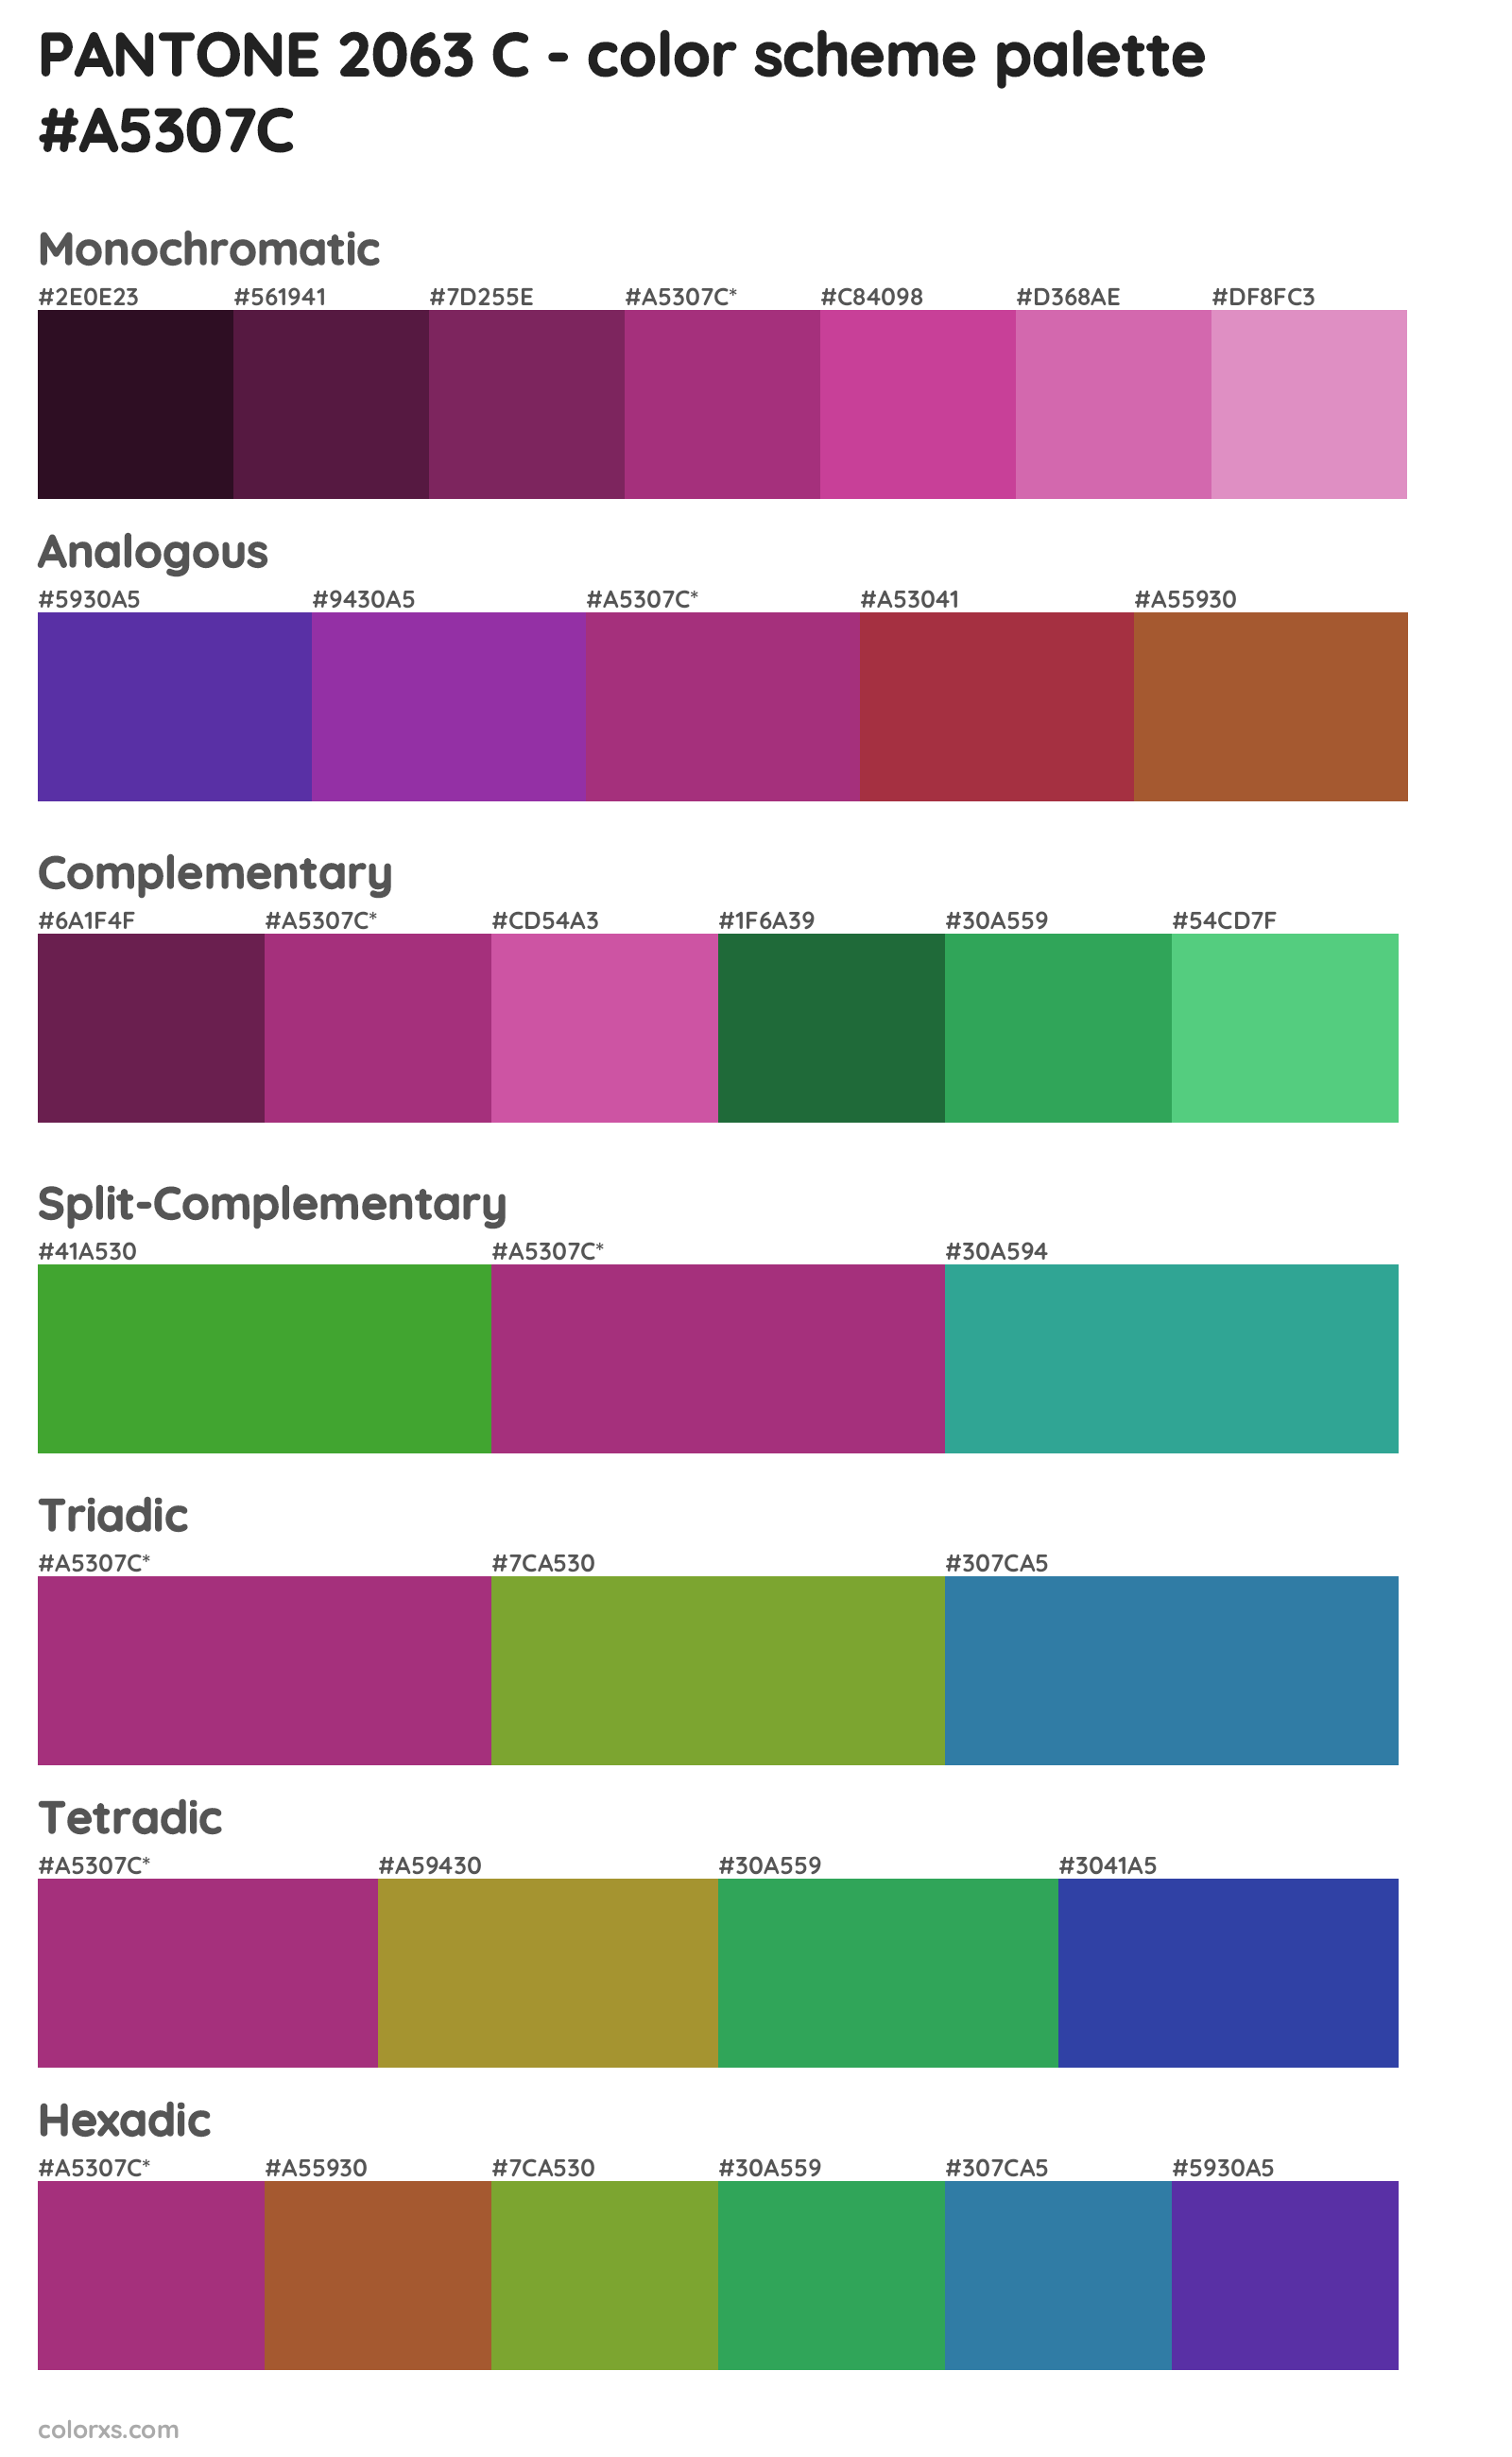 PANTONE 2063 C Color Scheme Palettes